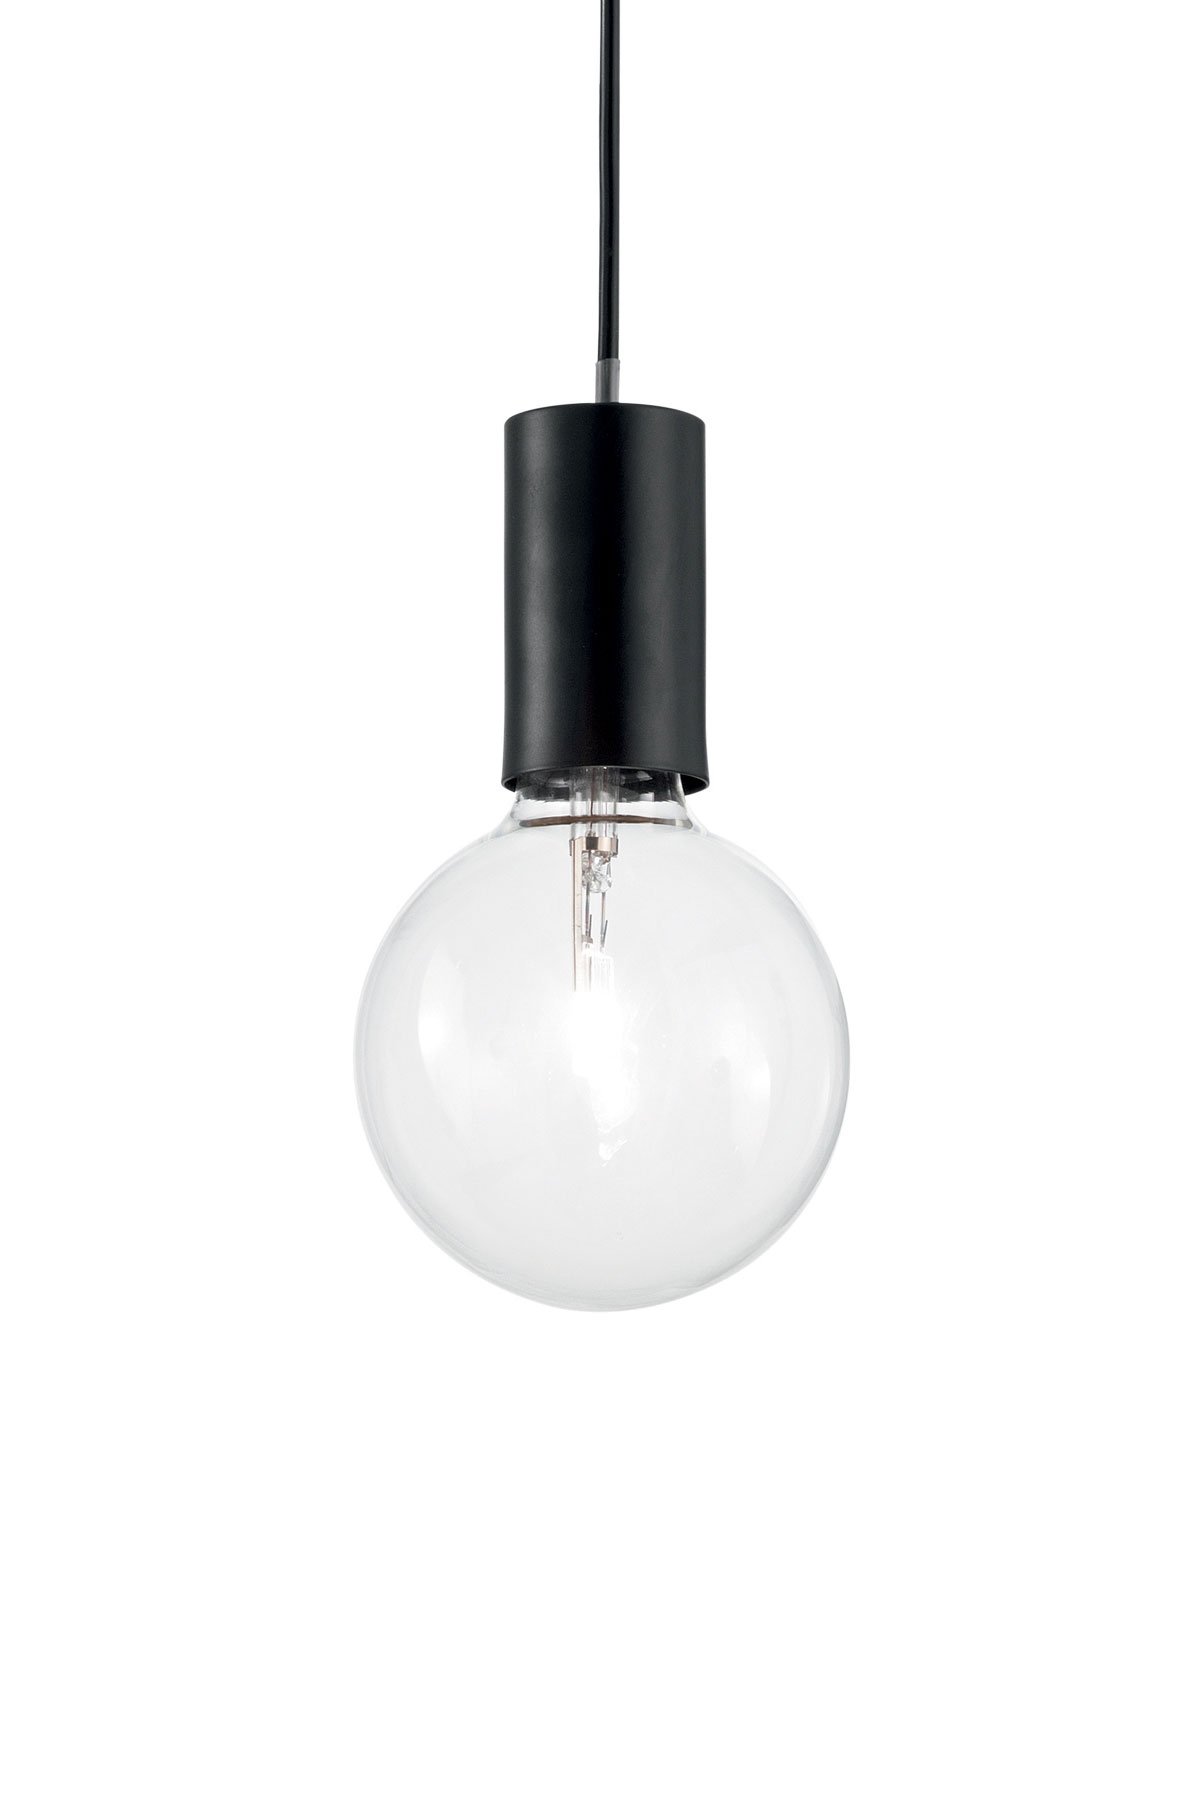   
                        Люстра IDEAL LUX (Італія) 93843    
                         у стилі хай-тек.  
                        Тип джерела світла: cвітлодіодні led, енергозберігаючі, розжарювання.                         Форма: коло.                                                                          фото 1